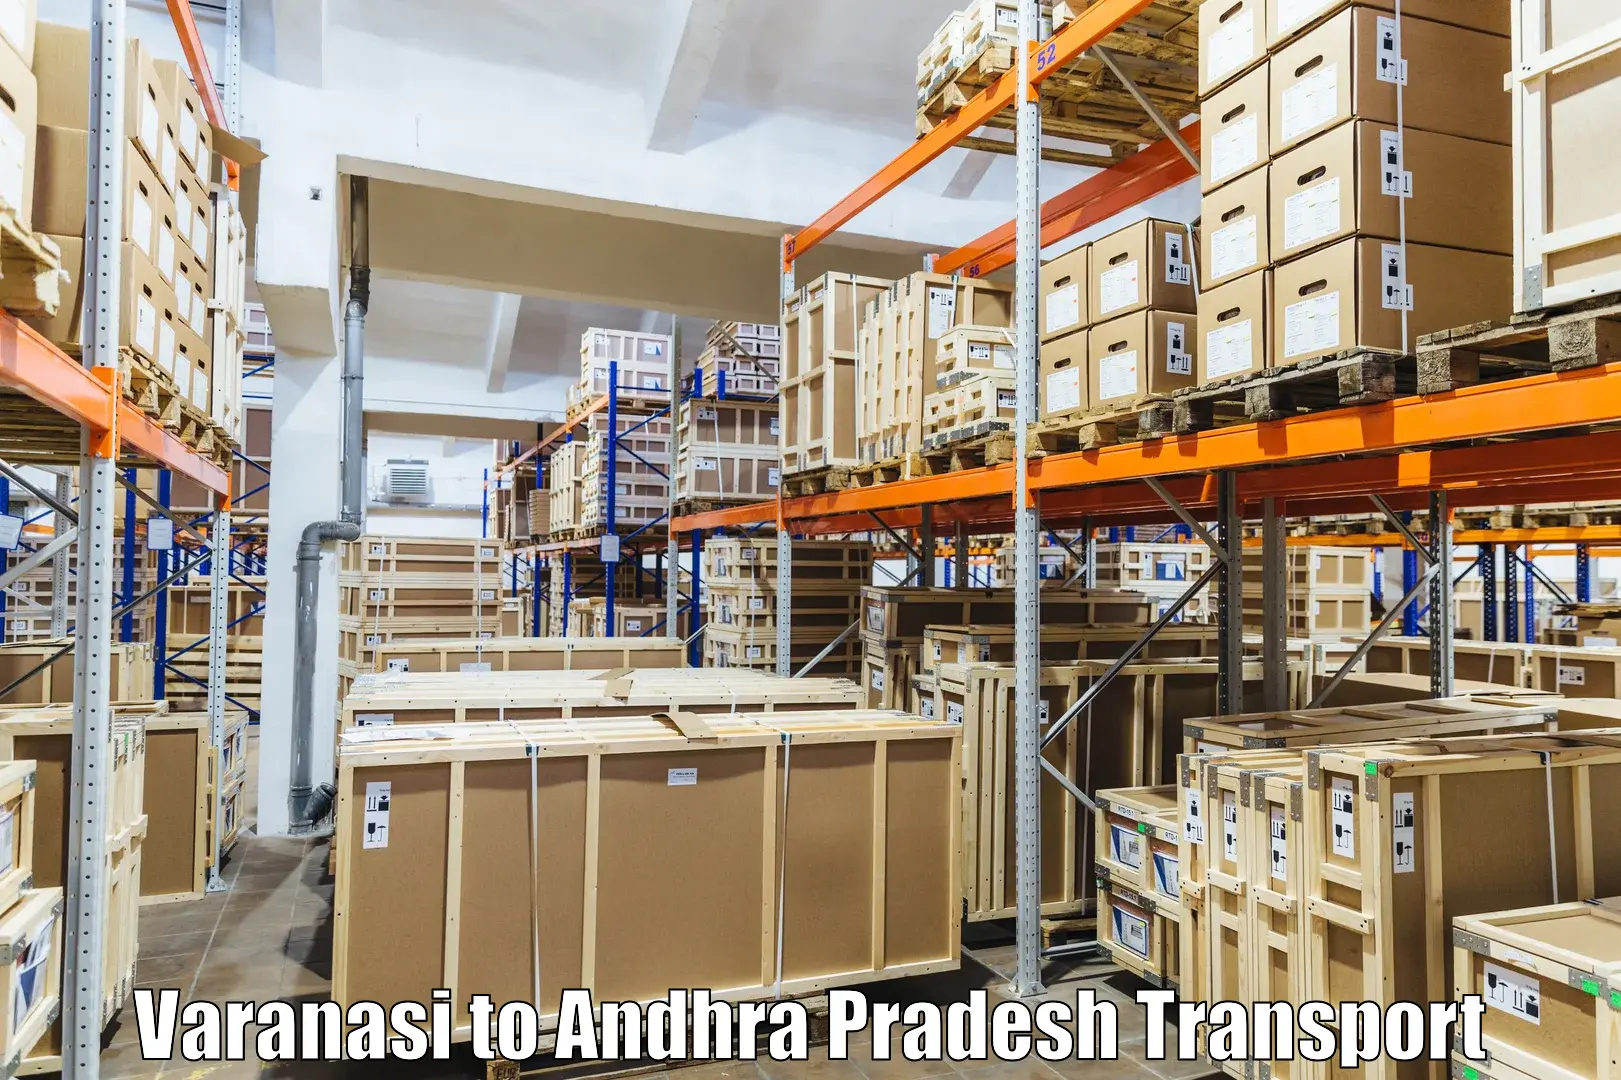 Commercial transport service Varanasi to Chandragiri